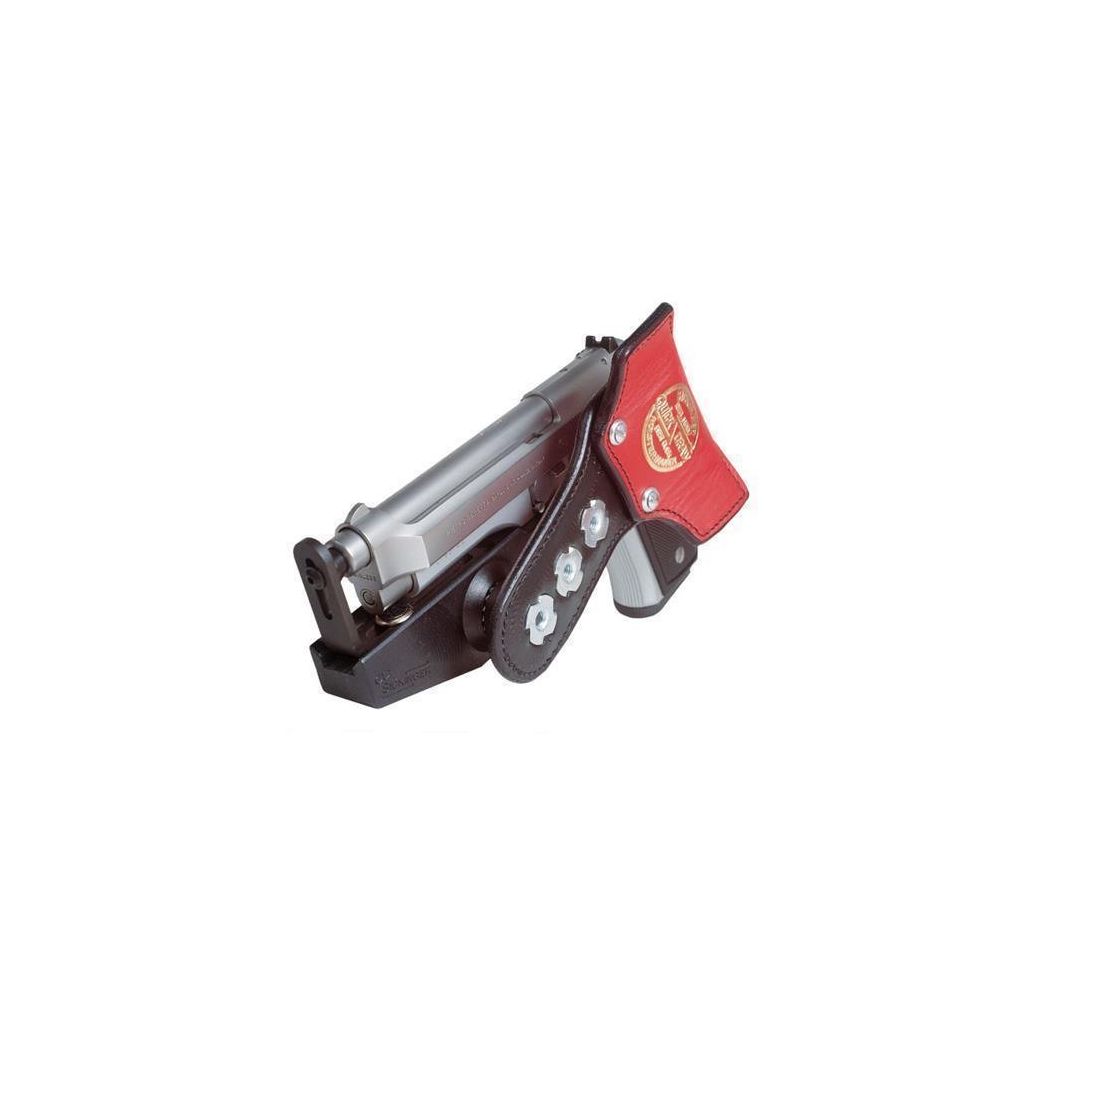 Wettkampfholster SPEED MACHINE CZ Shadow 2/CZ TS2,Tanfoglio Limited/Custom HC5"-6,5"-Red-Rechtshänder